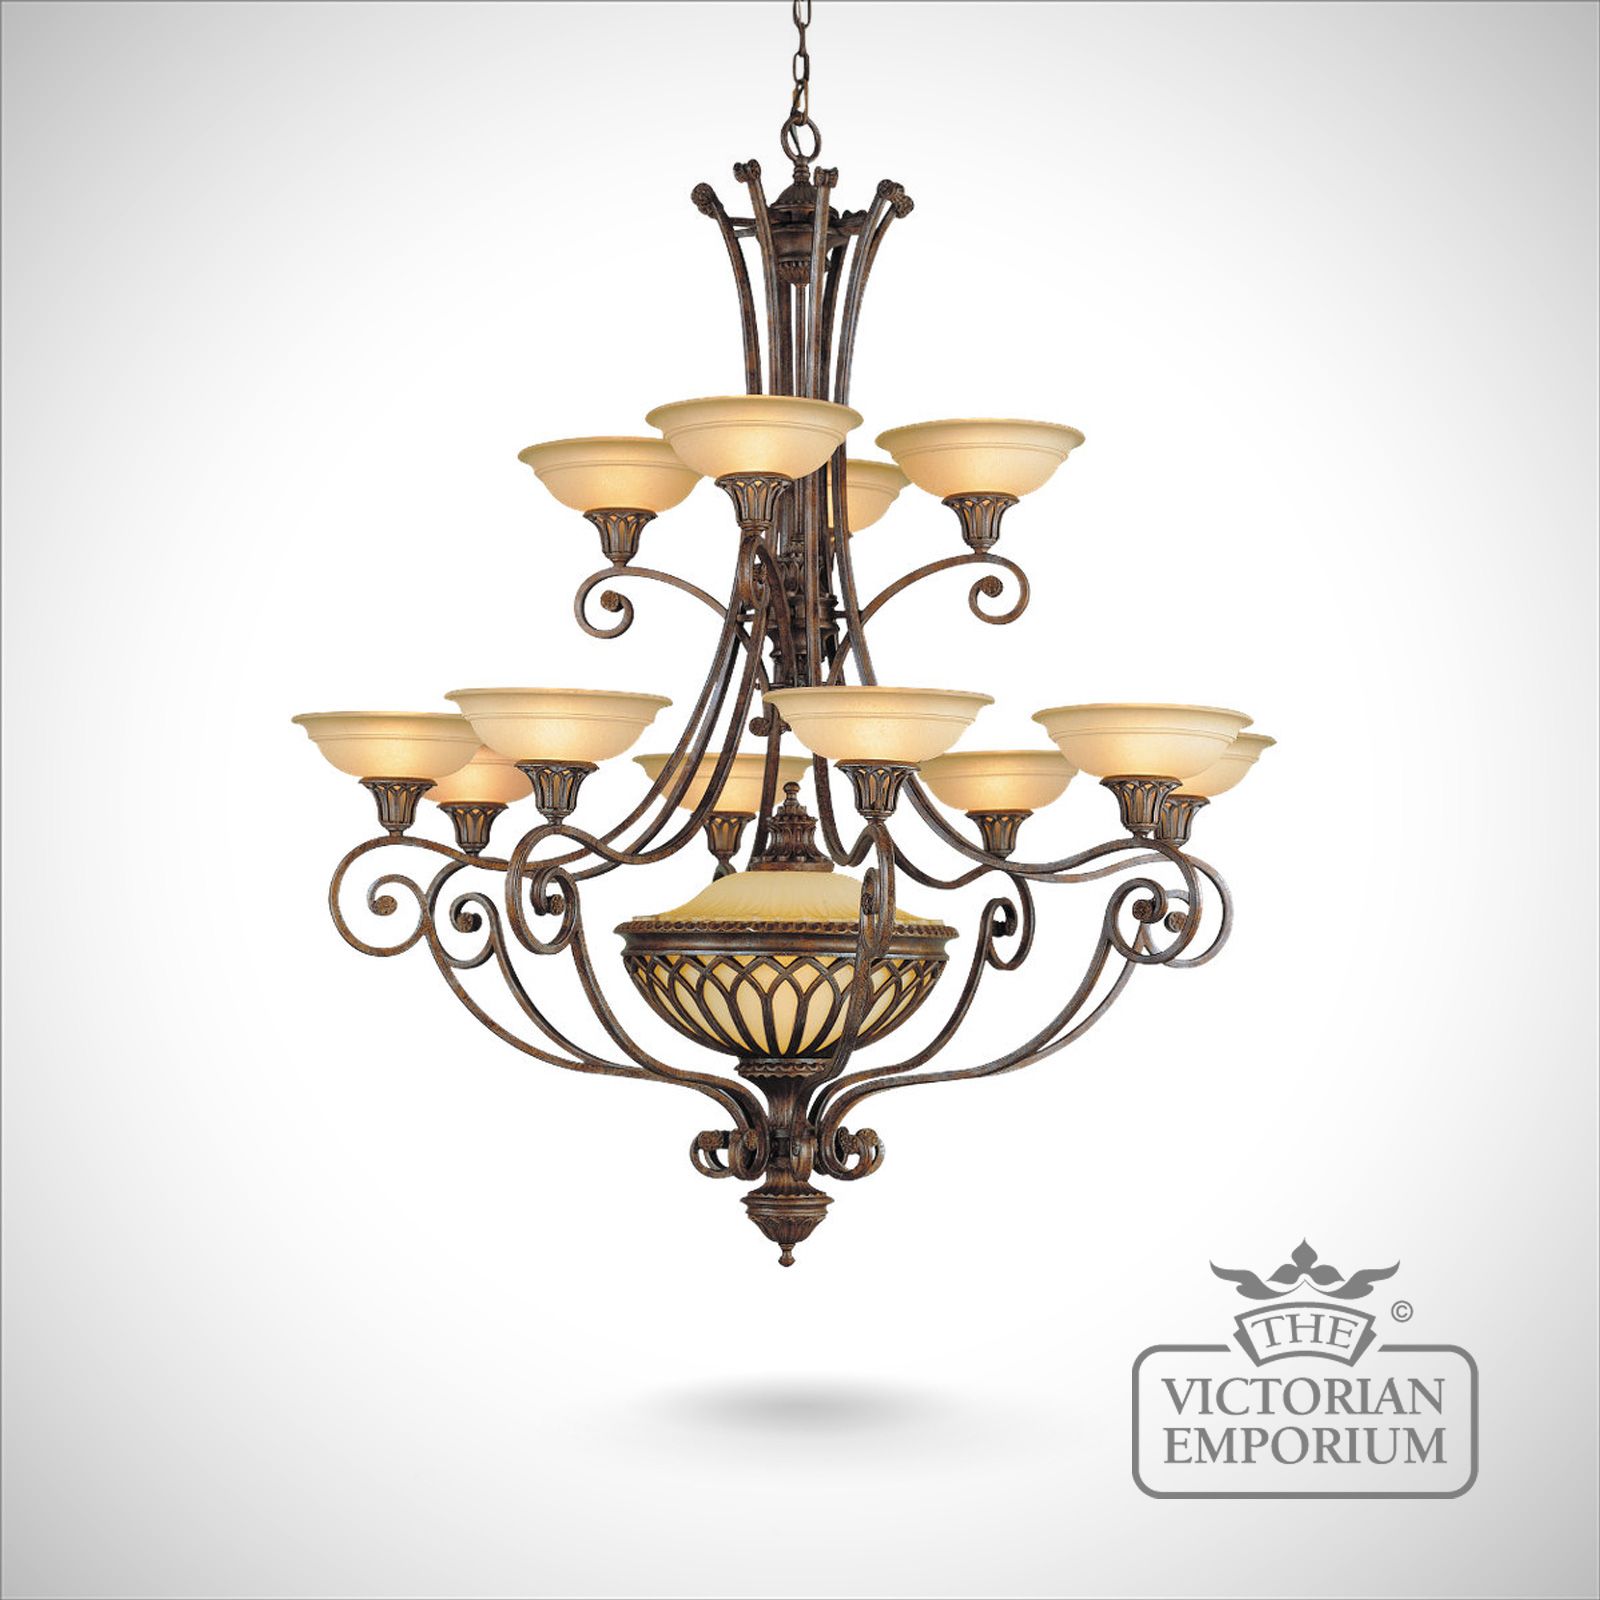 Stirling 12 light chandelier